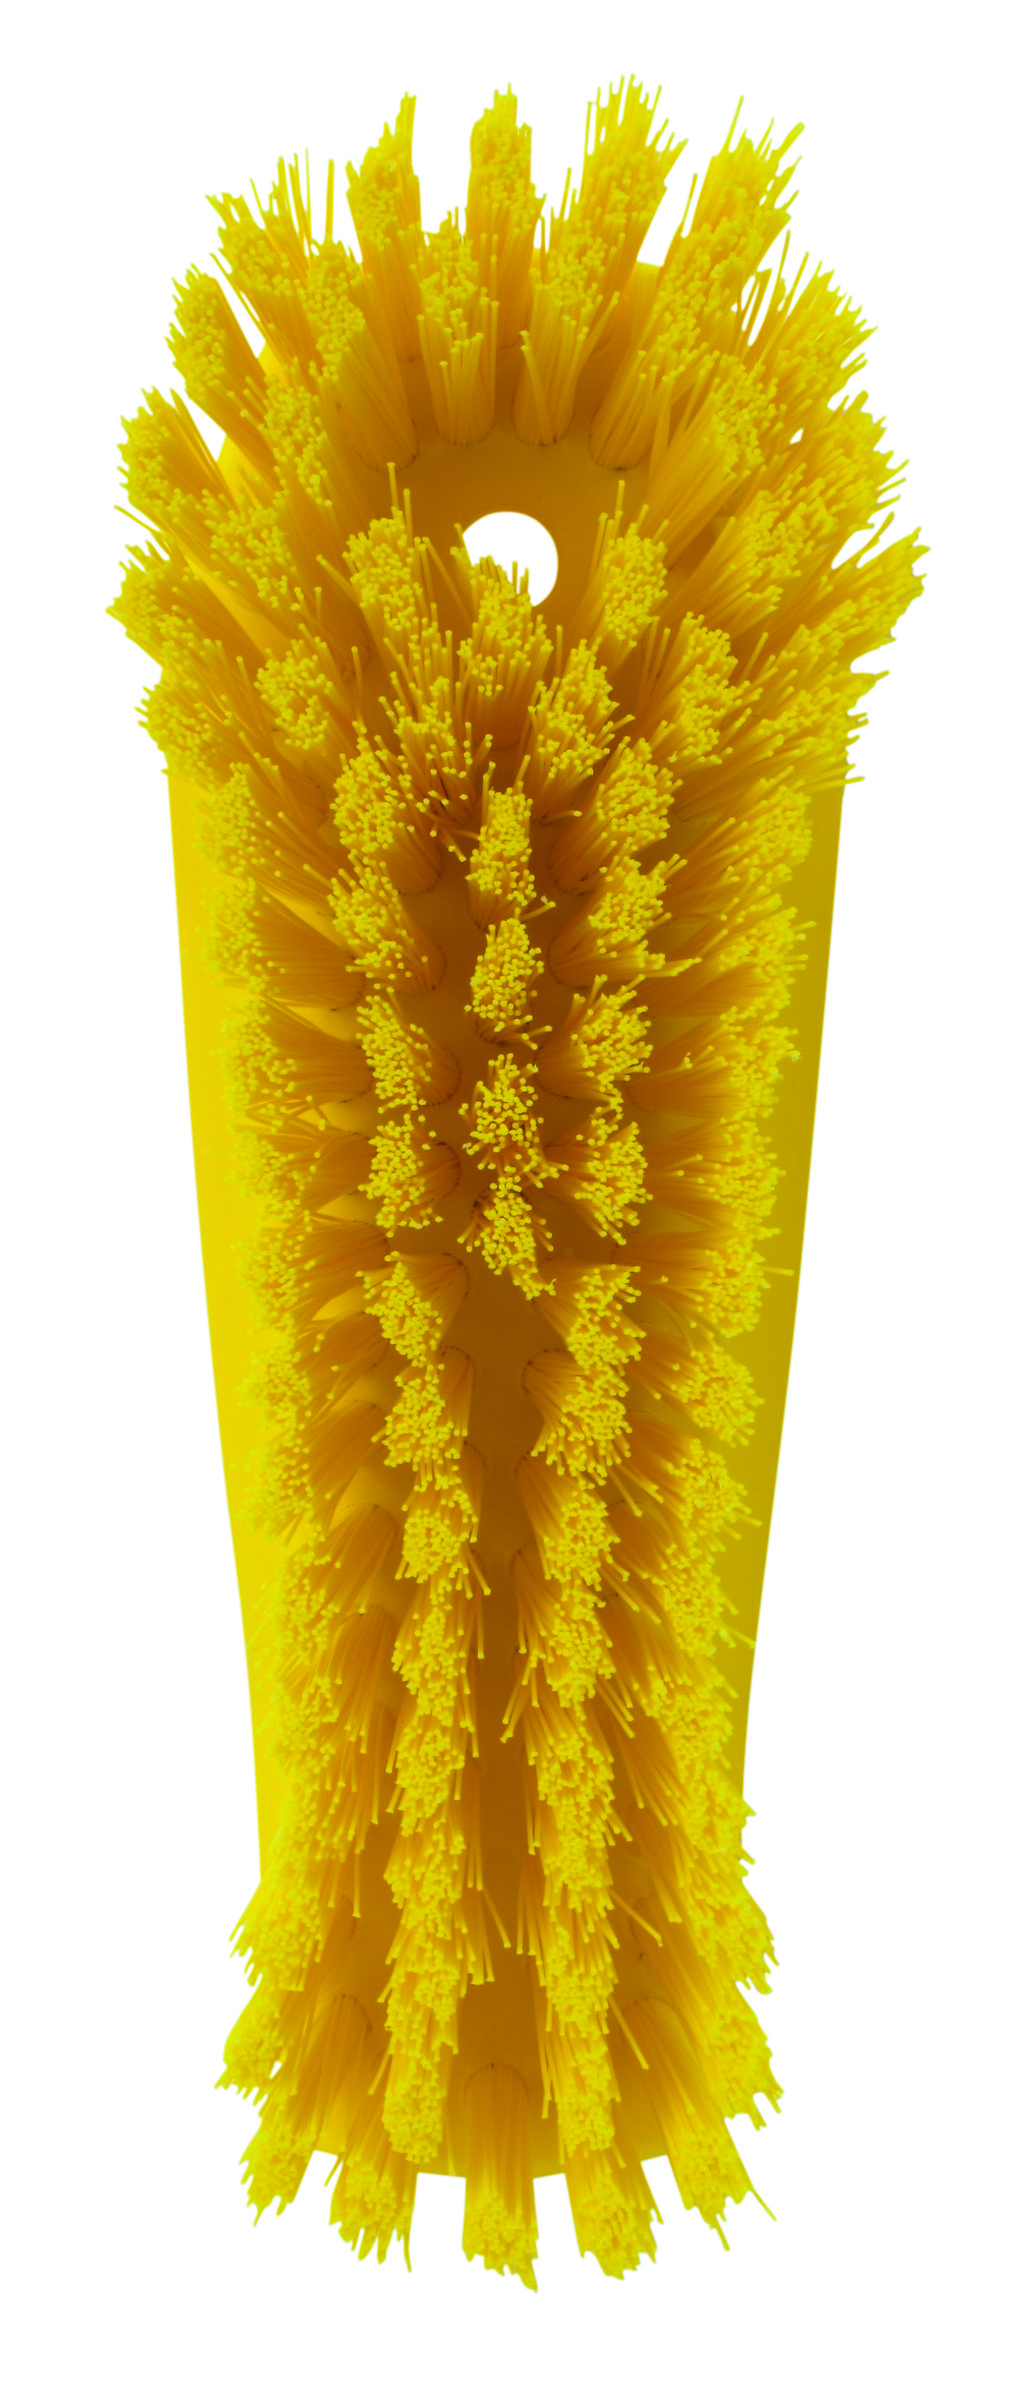 Щетка Vikan для мытья разделочных досок и рабочих поверхностей, жесткая, 200 мм, желтый